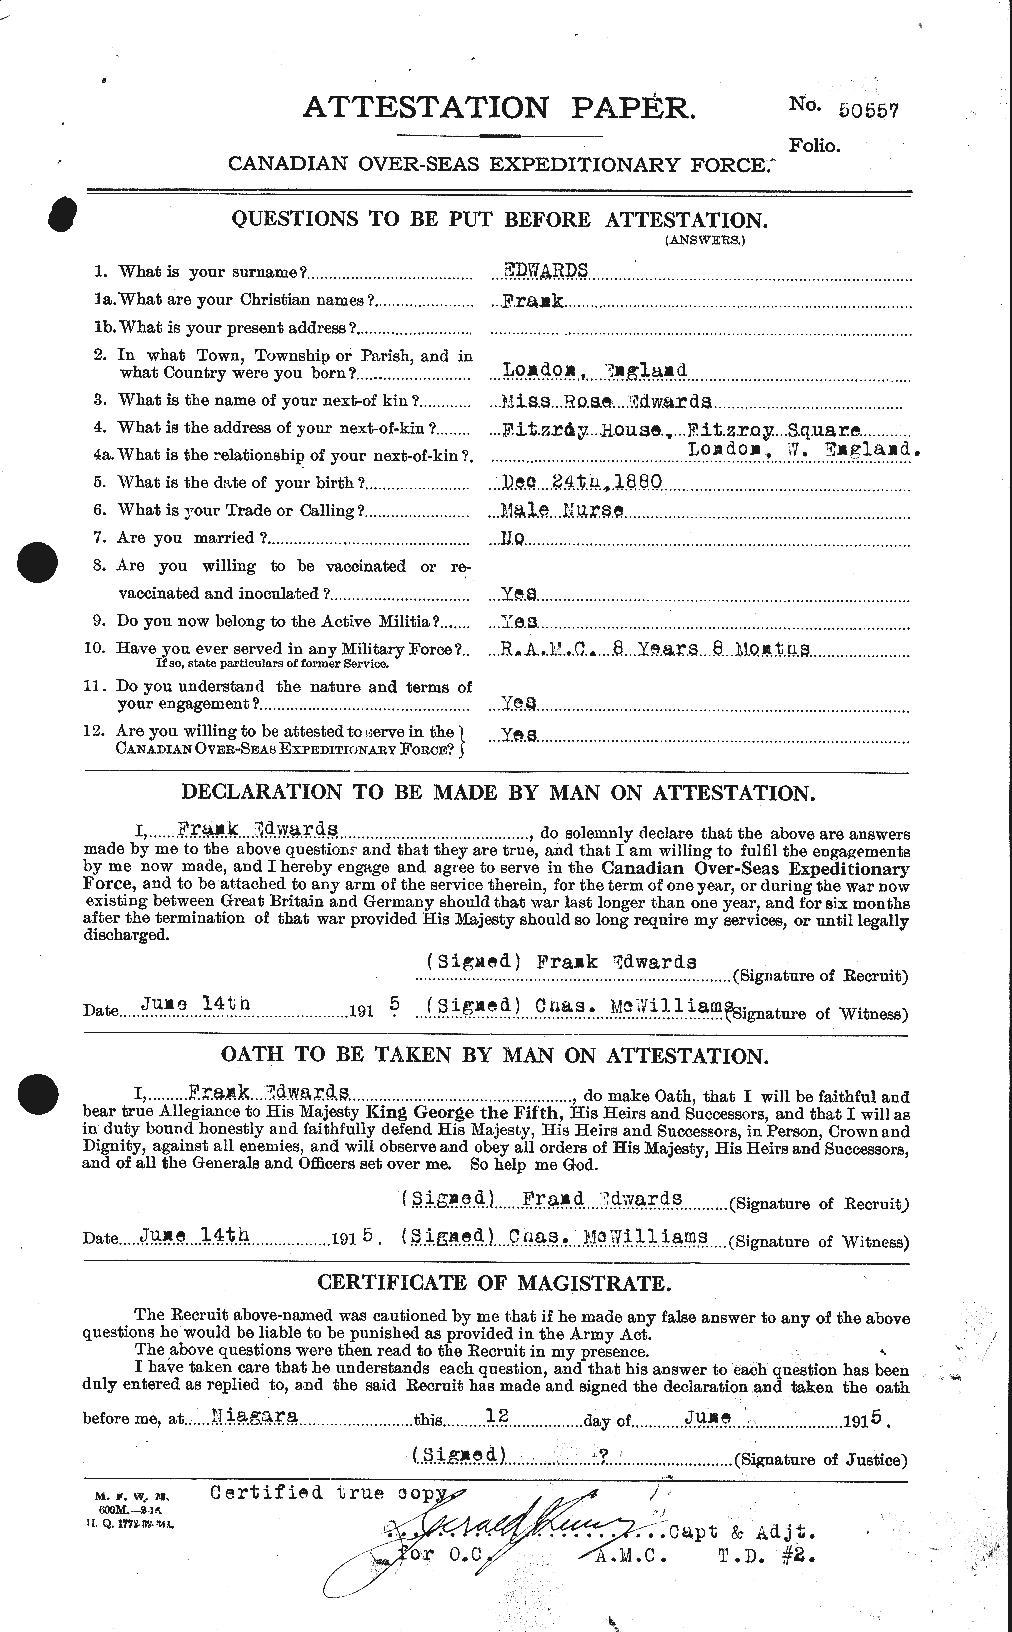 Dossiers du Personnel de la Première Guerre mondiale - CEC 309042a